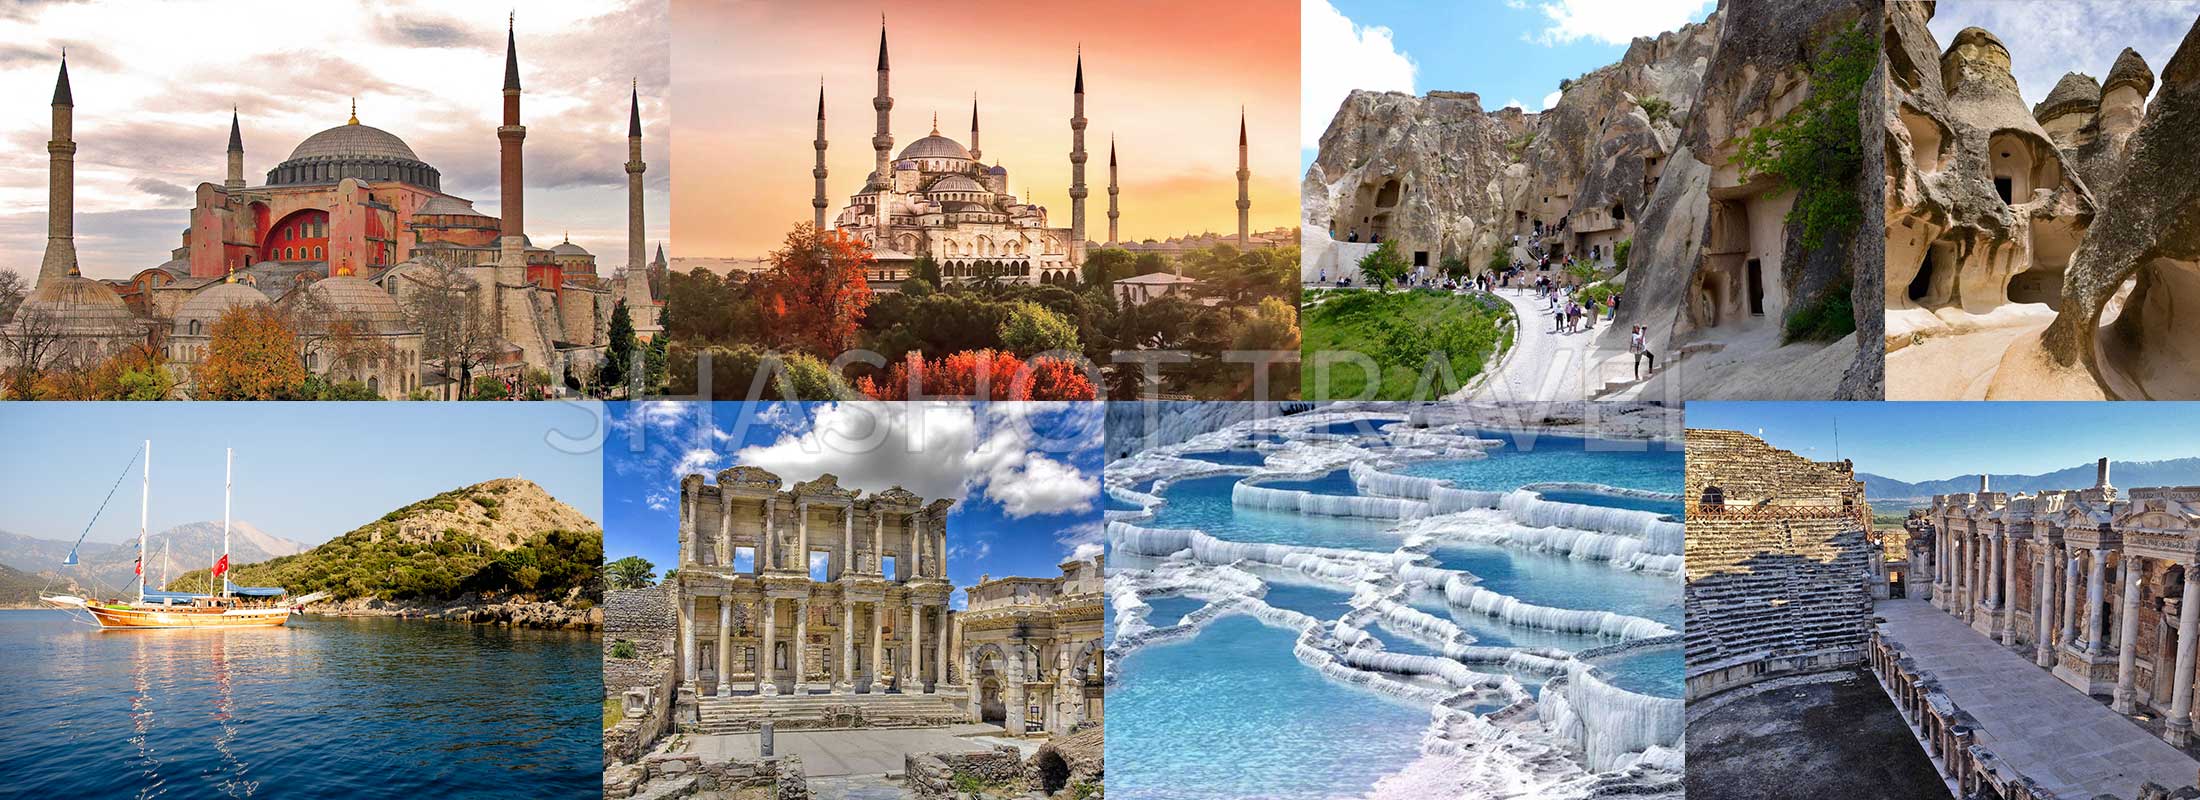 turkey-package-tours-12-days-istanbul-hagia-sophia-museum-blue-mosque-cappadocia-blue-cruise-olympos-fethiye-ephesus-pamukkale